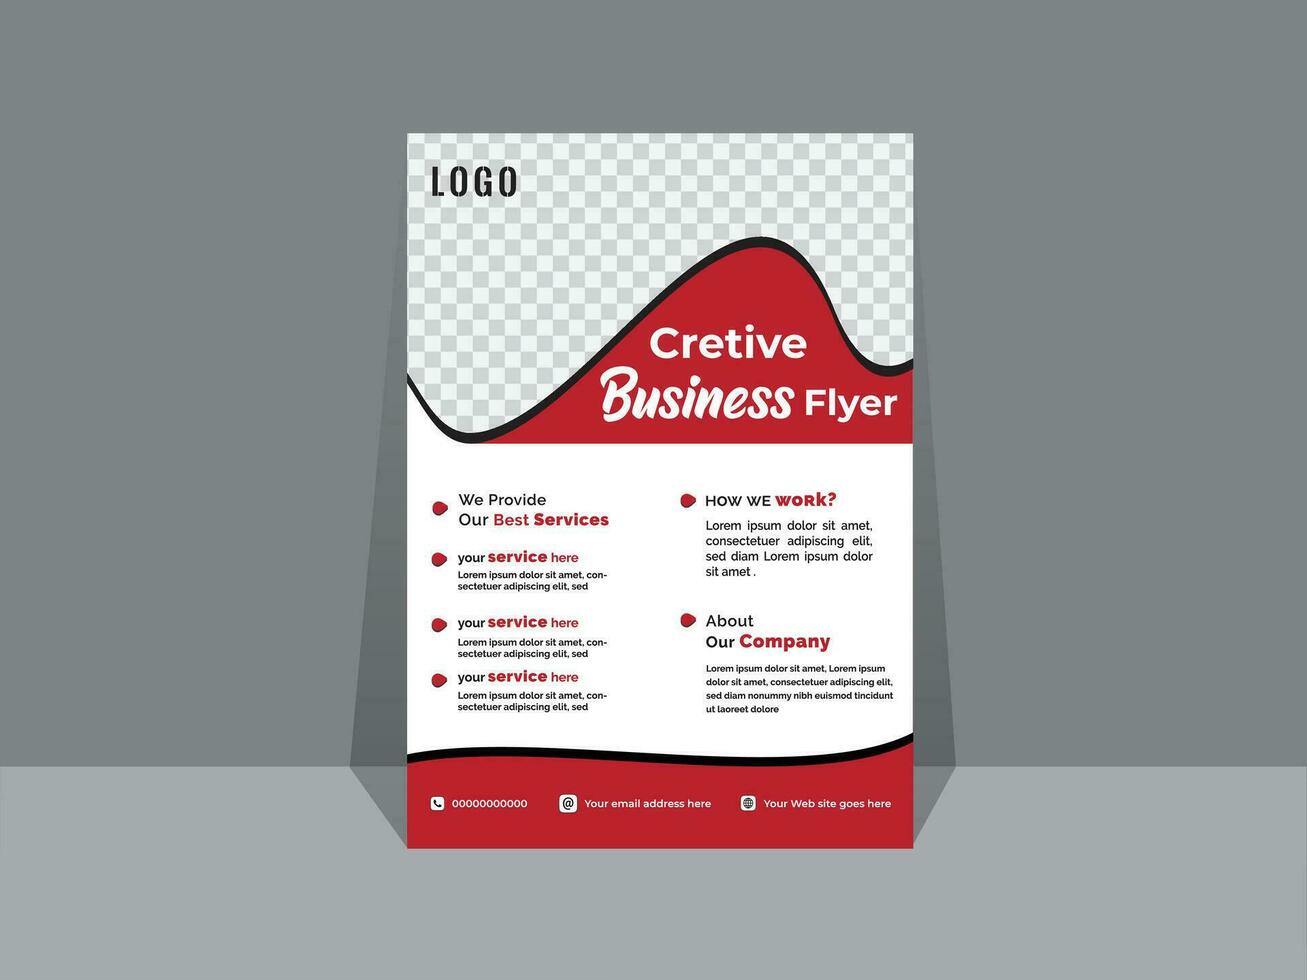 kreativ Geschäft Flyer Vorlage Design zum ein Digital Marketing Unternehmen oder Agentur vektor